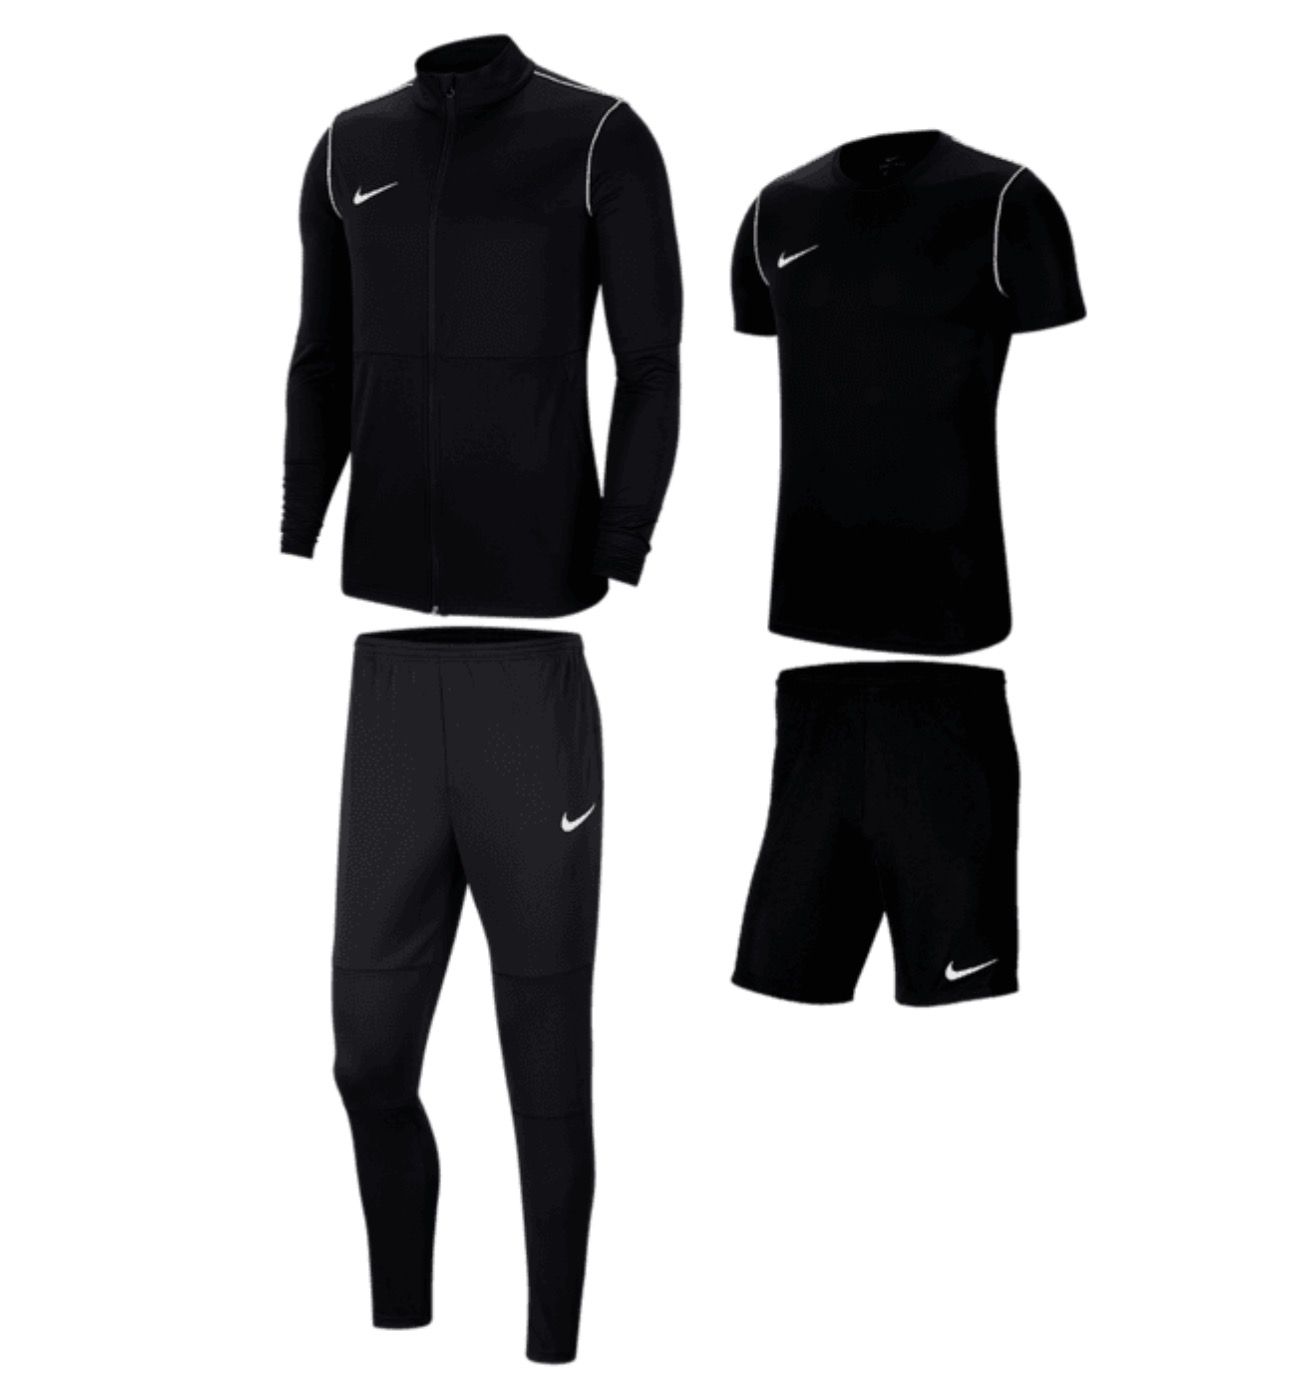 Nike Park 20 Trainings-Set (Jacke, Shirt, Short, Hose) für 59,99€ (statt 76€)